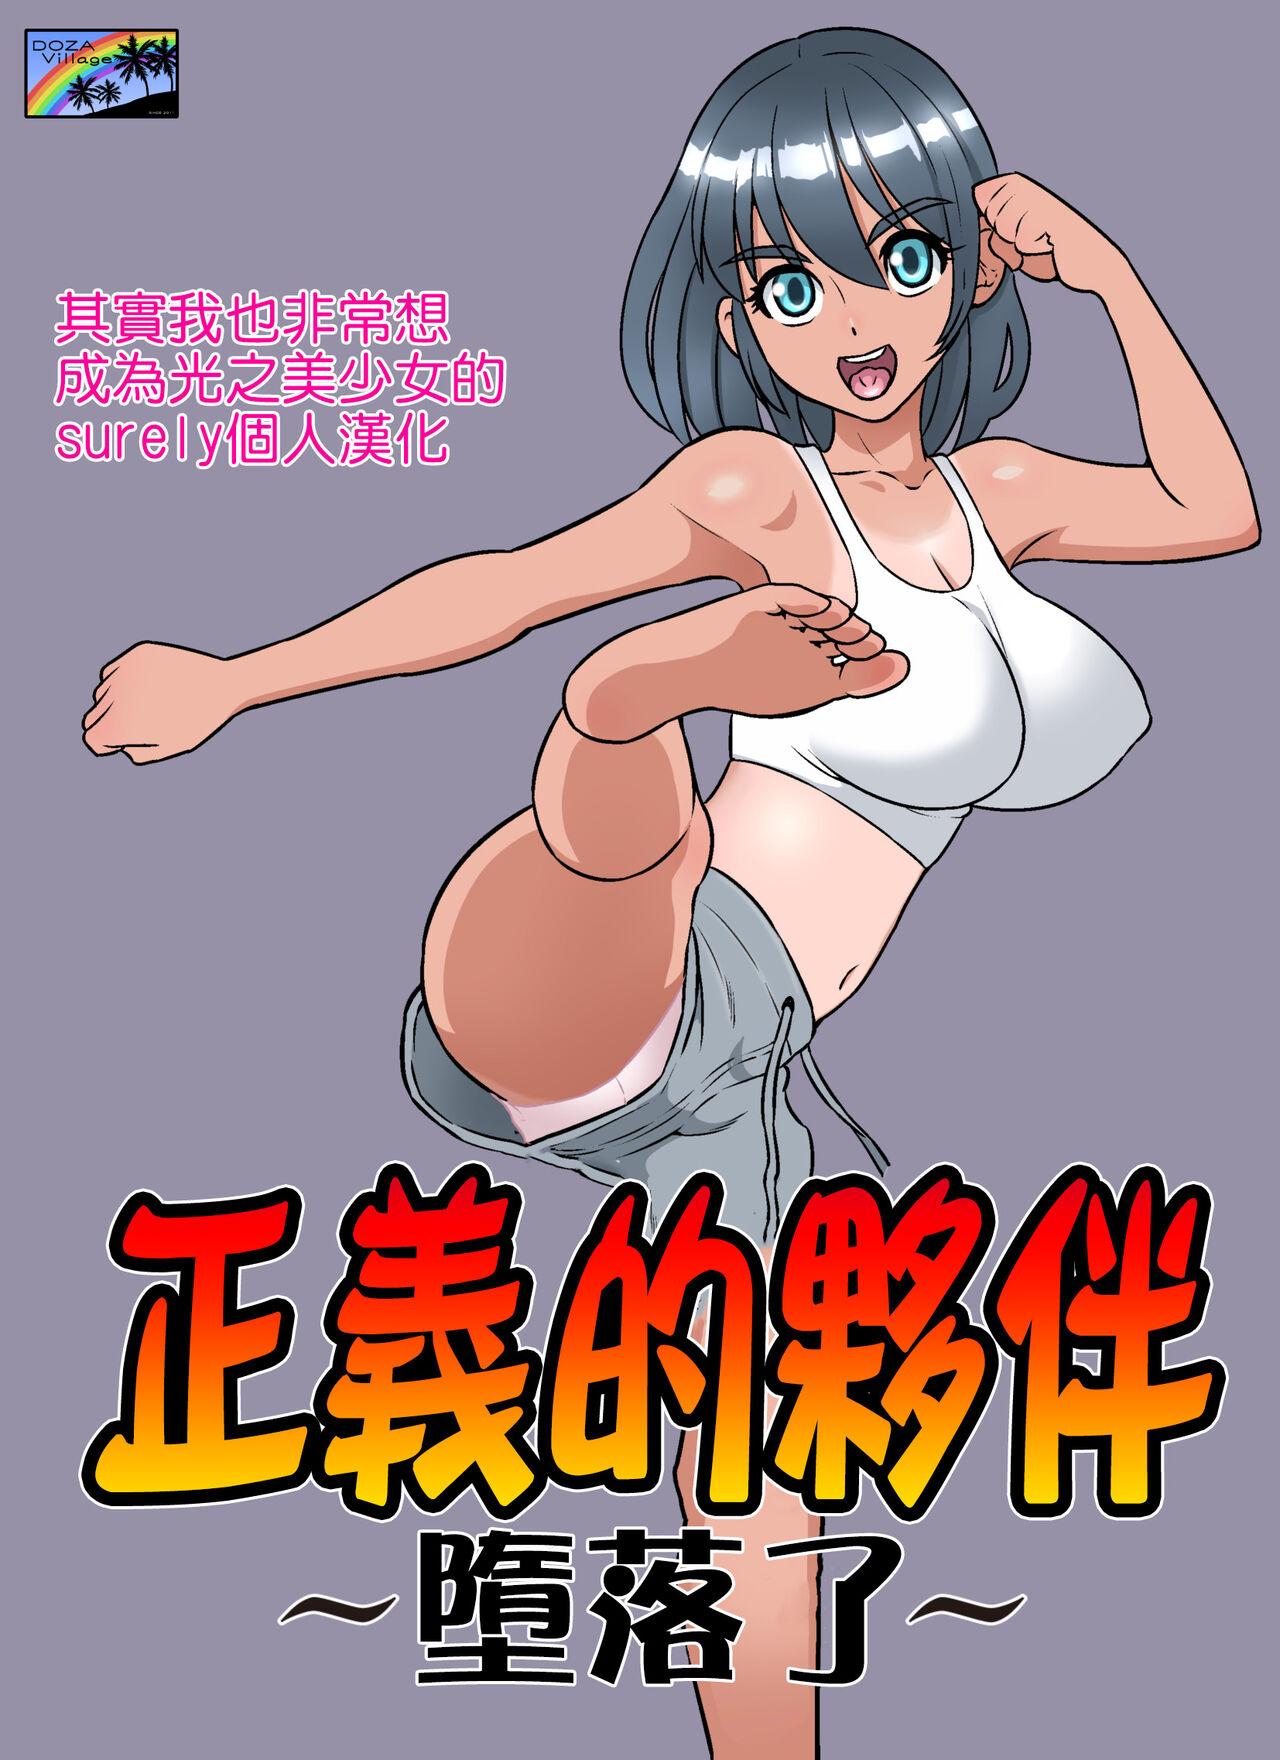 Seduction Porn Seigi no Mikata Club - Picture 1